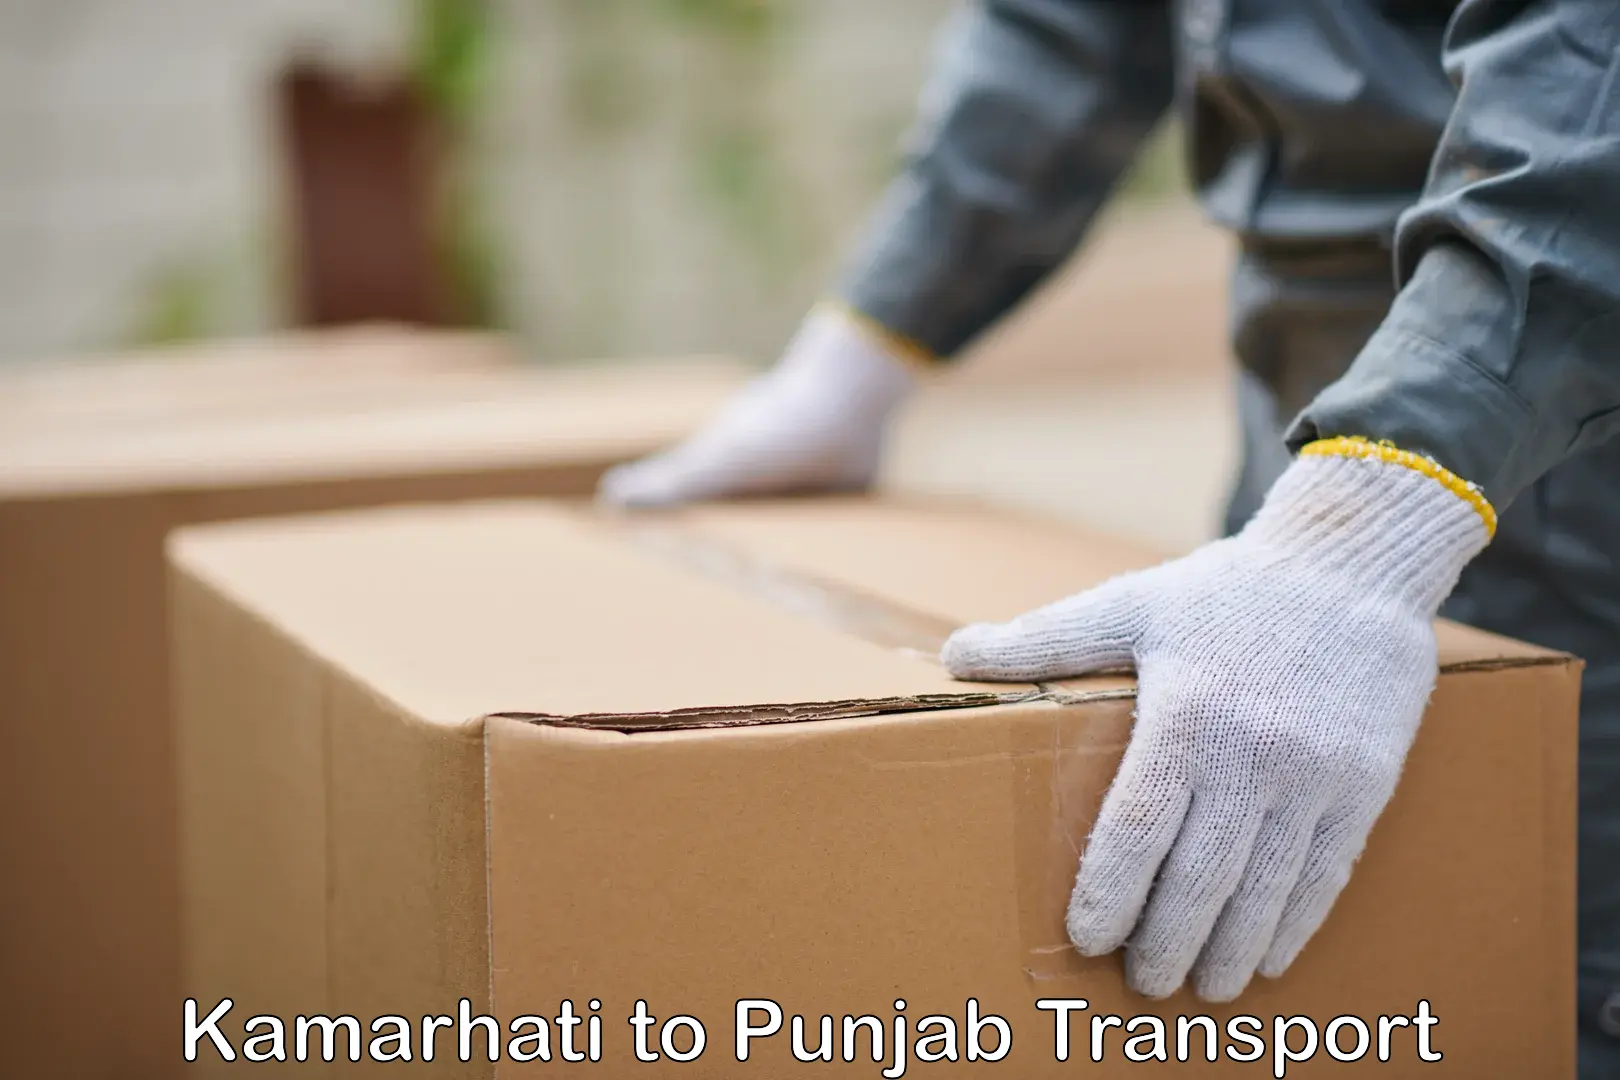 Shipping partner Kamarhati to Punjab